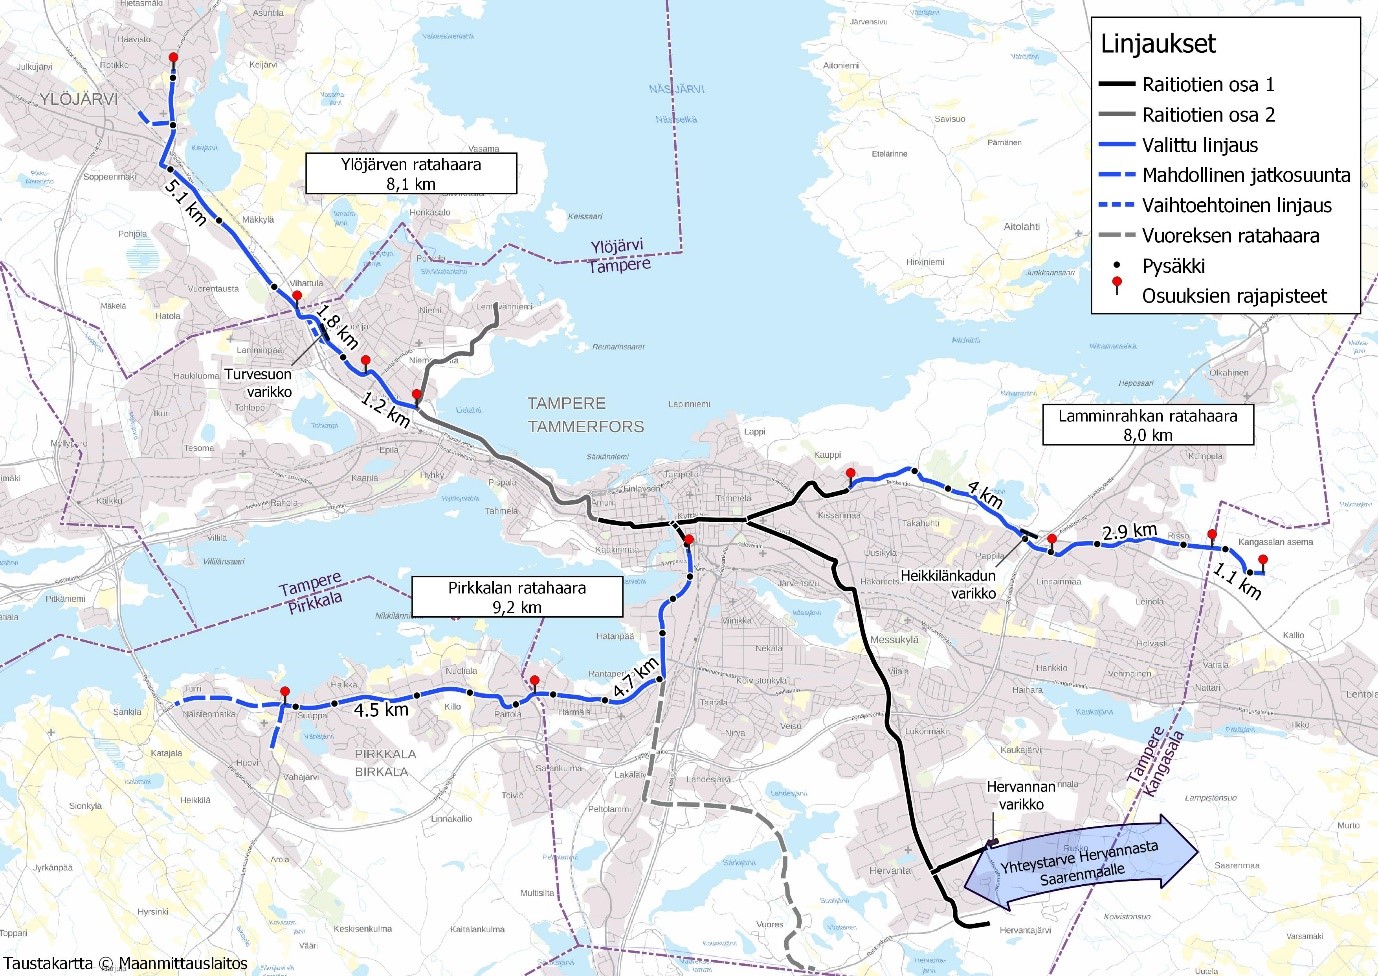 Kartta ratikan yleissuunnitelman mukaisista linjauksista Tampereen seudulla